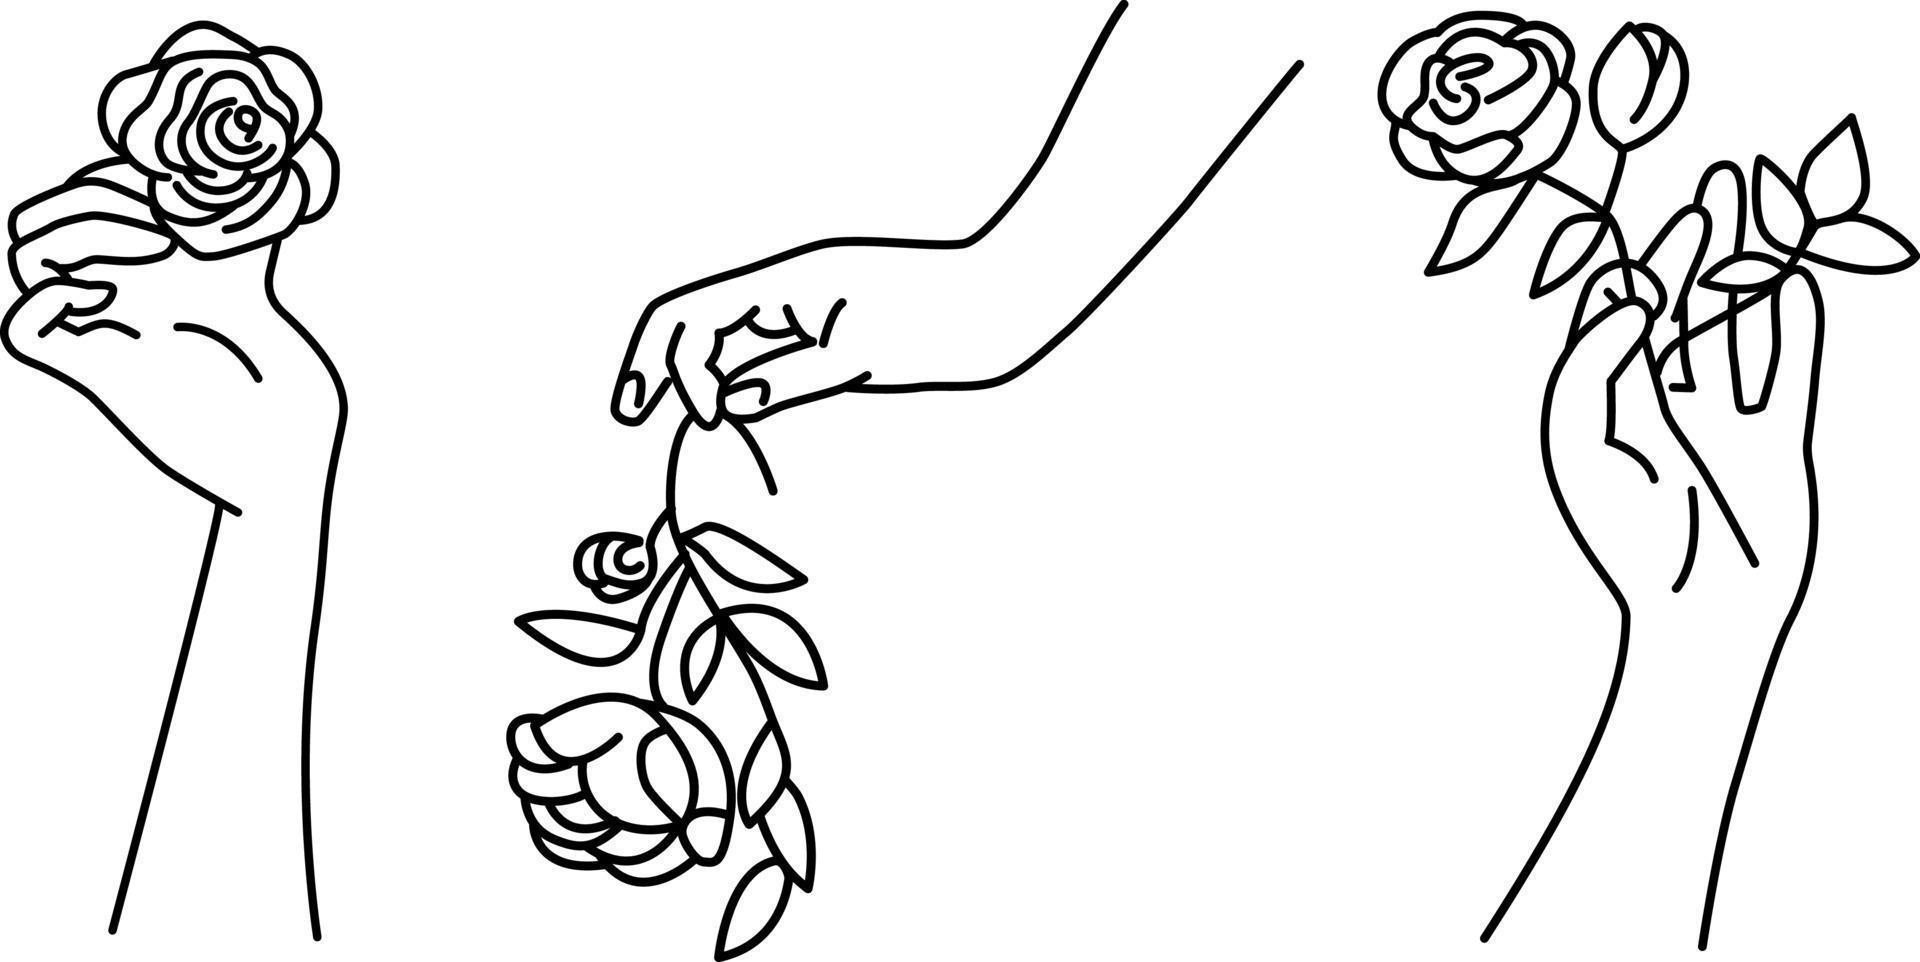 een set handen met rozen in eenvoudige lineaire stijl. vrouwelijke handpalmen met bloemen. symbolische, decoratieve vectorillustratie. vector